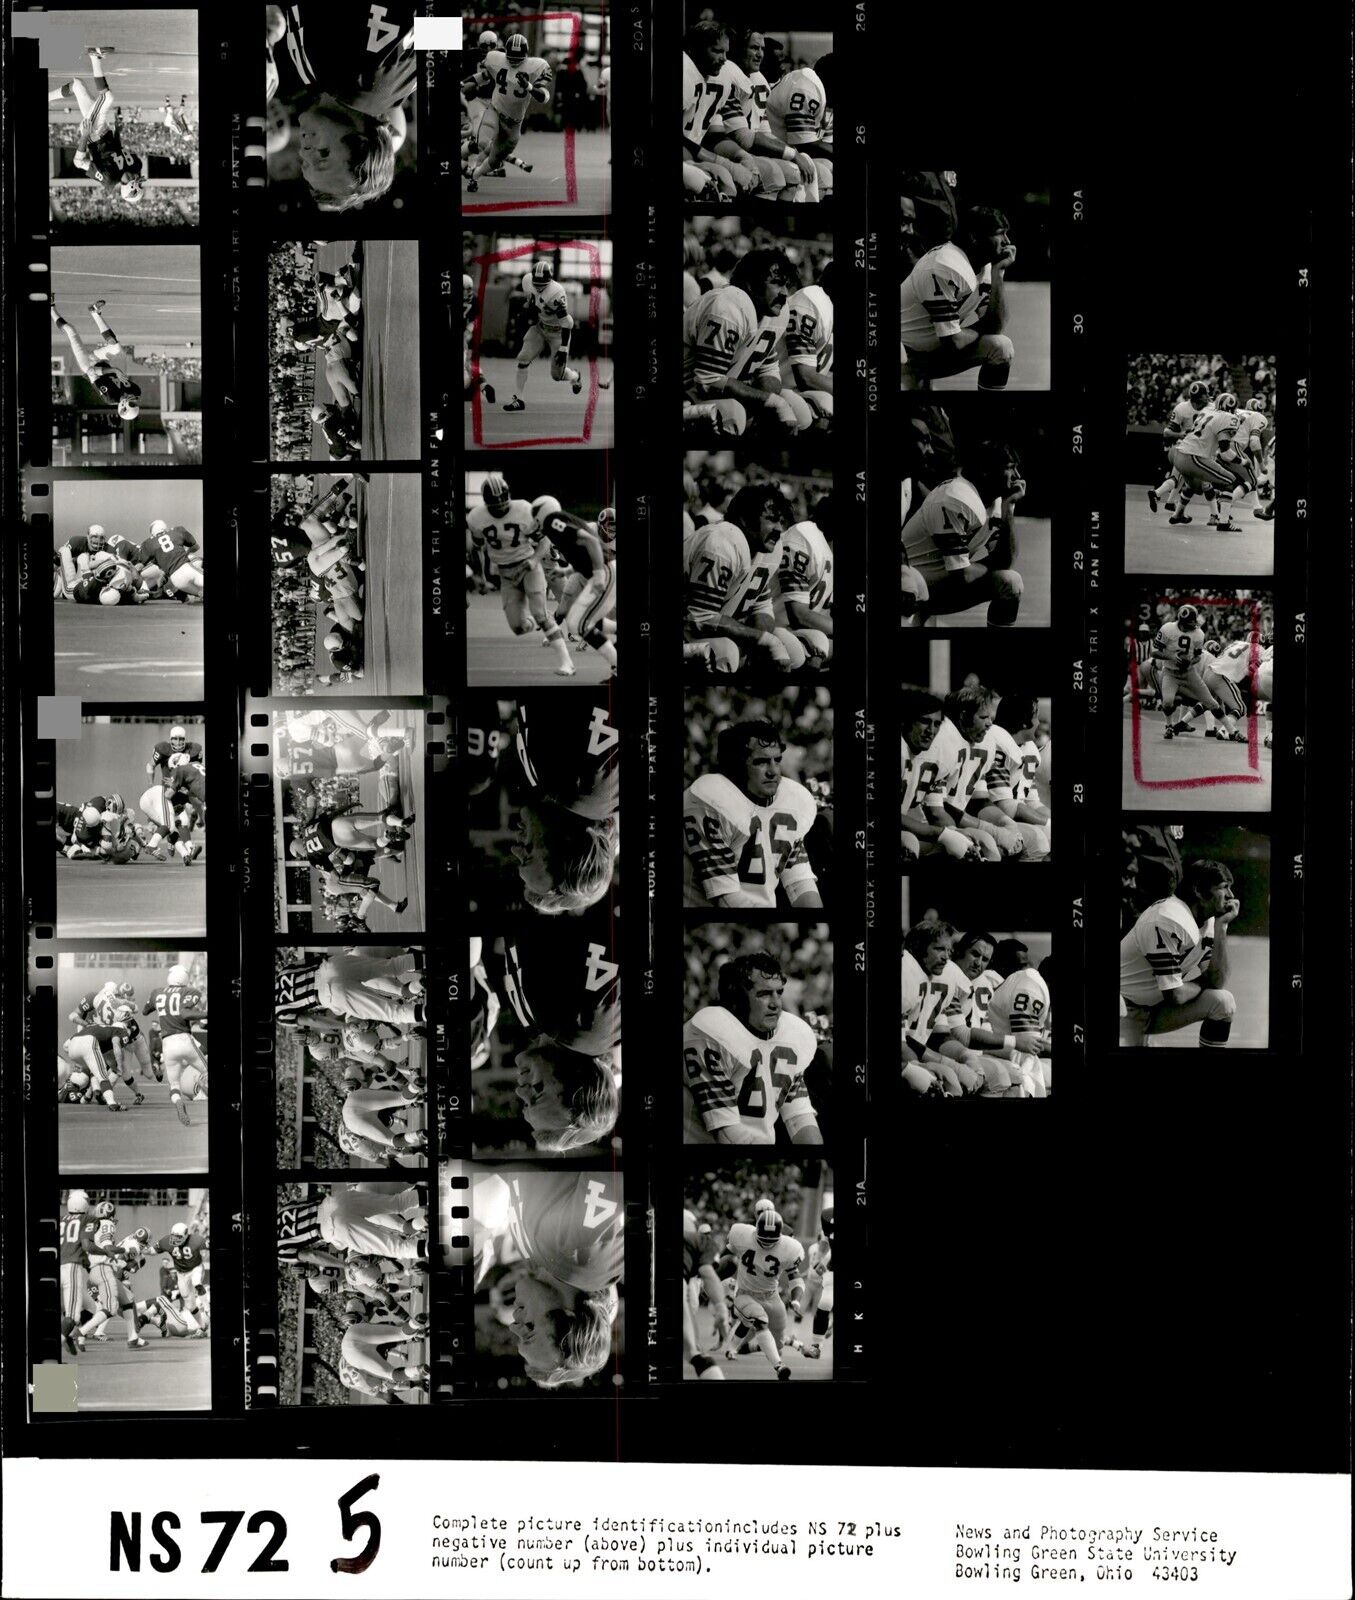 LD323 1972 Original Contact Sheet Photo SONNY JURGENSEN REDSKINS - CARDINALS